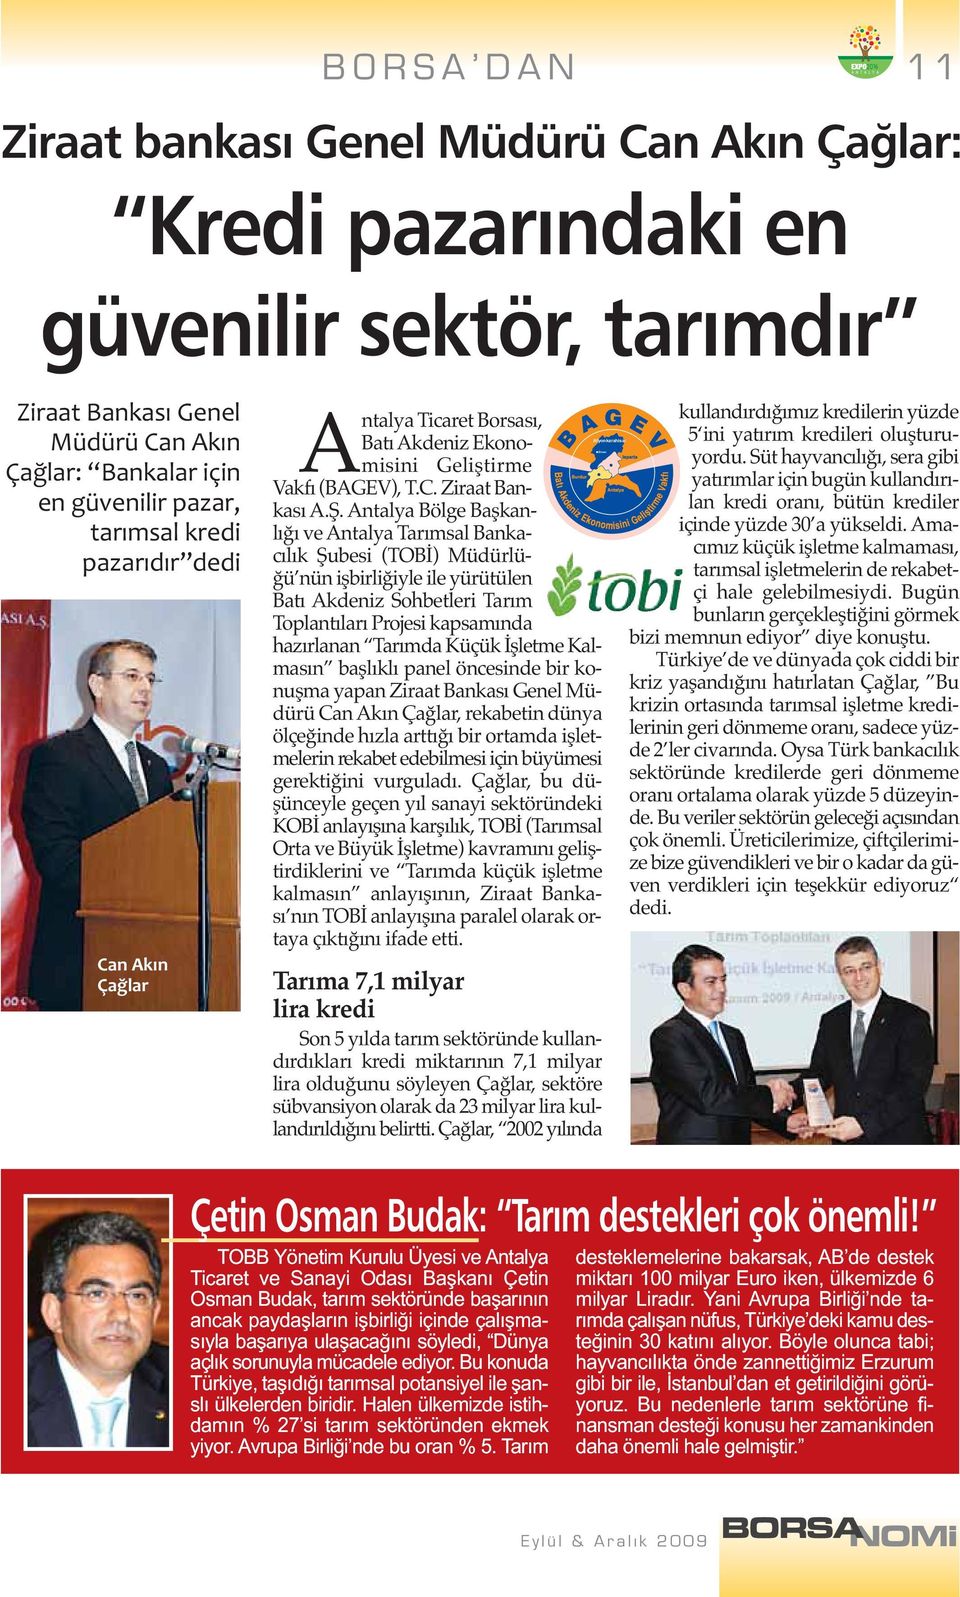 Antalya Bölge Başkanlığı ve Antalya Tarımsal Bankacılık Şubesi (TOBİ) Müdürlüğü nün işbirliğiyle ile yürütülen Batı Akdeniz Sohbetleri Tarım Toplantıları Projesi kapsamında hazırlanan Tarımda Küçük